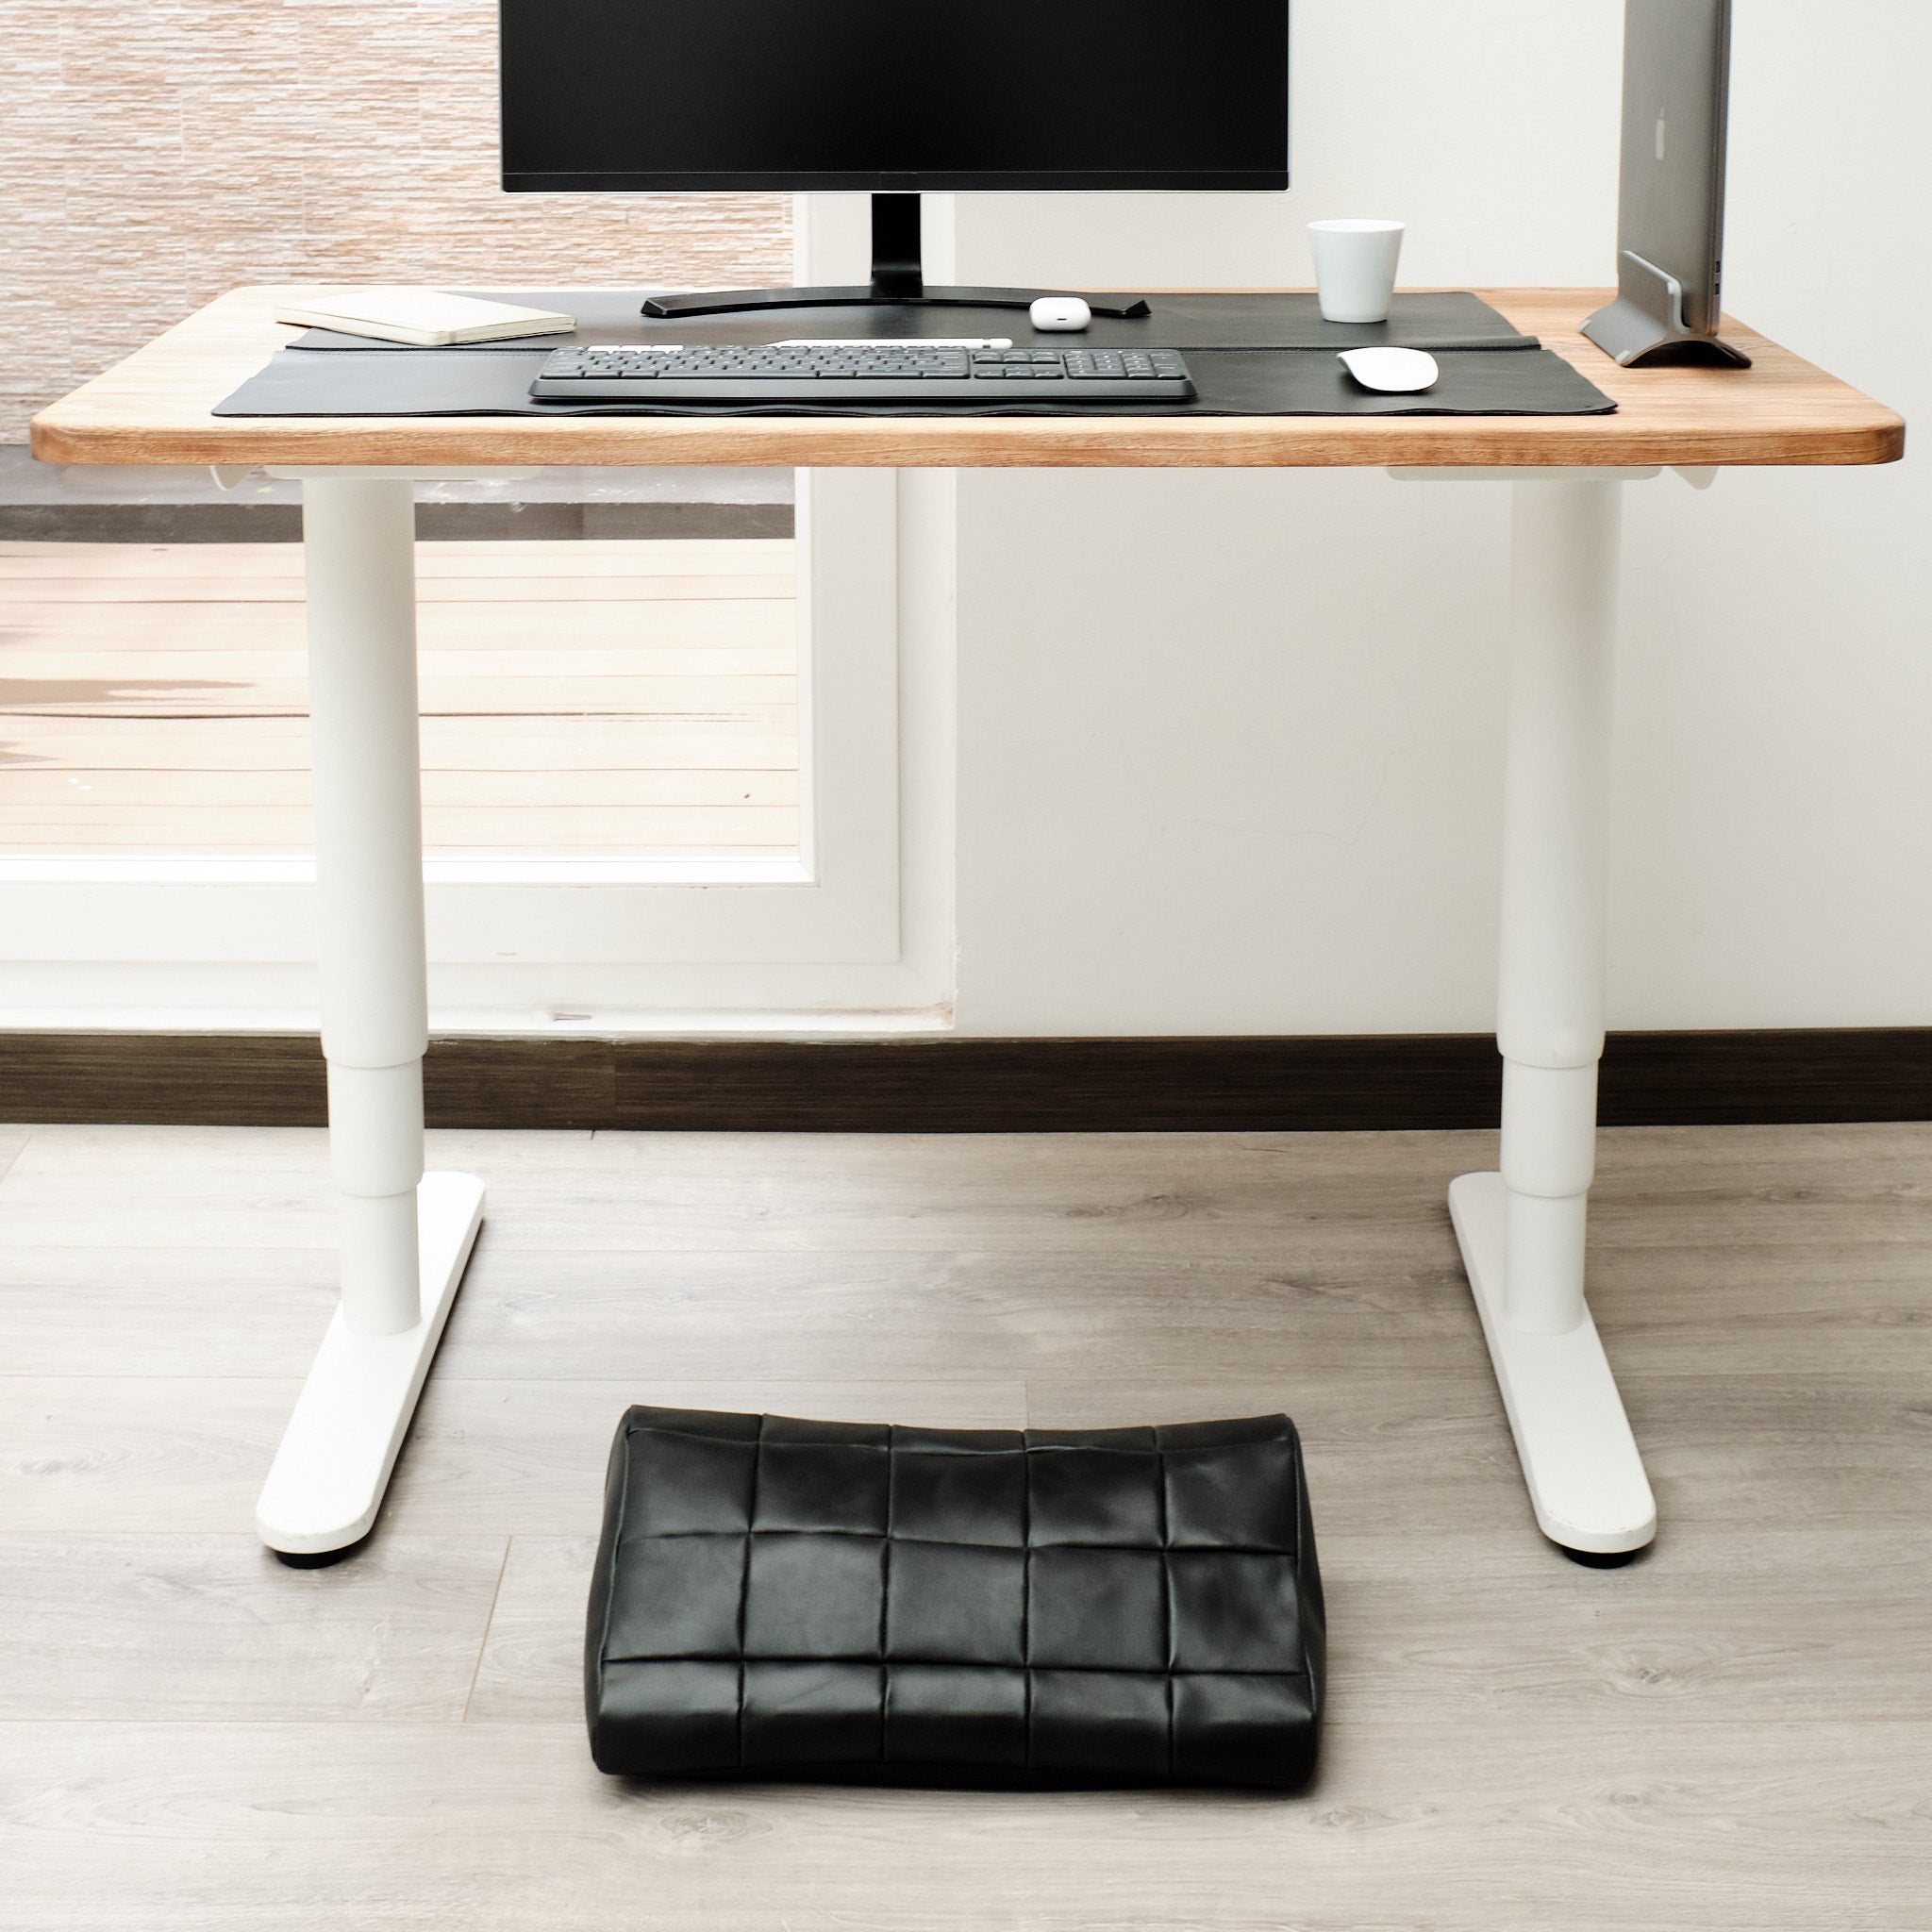 Adjustable Ergonomic Under Desk Foot Rest Office Gifts 